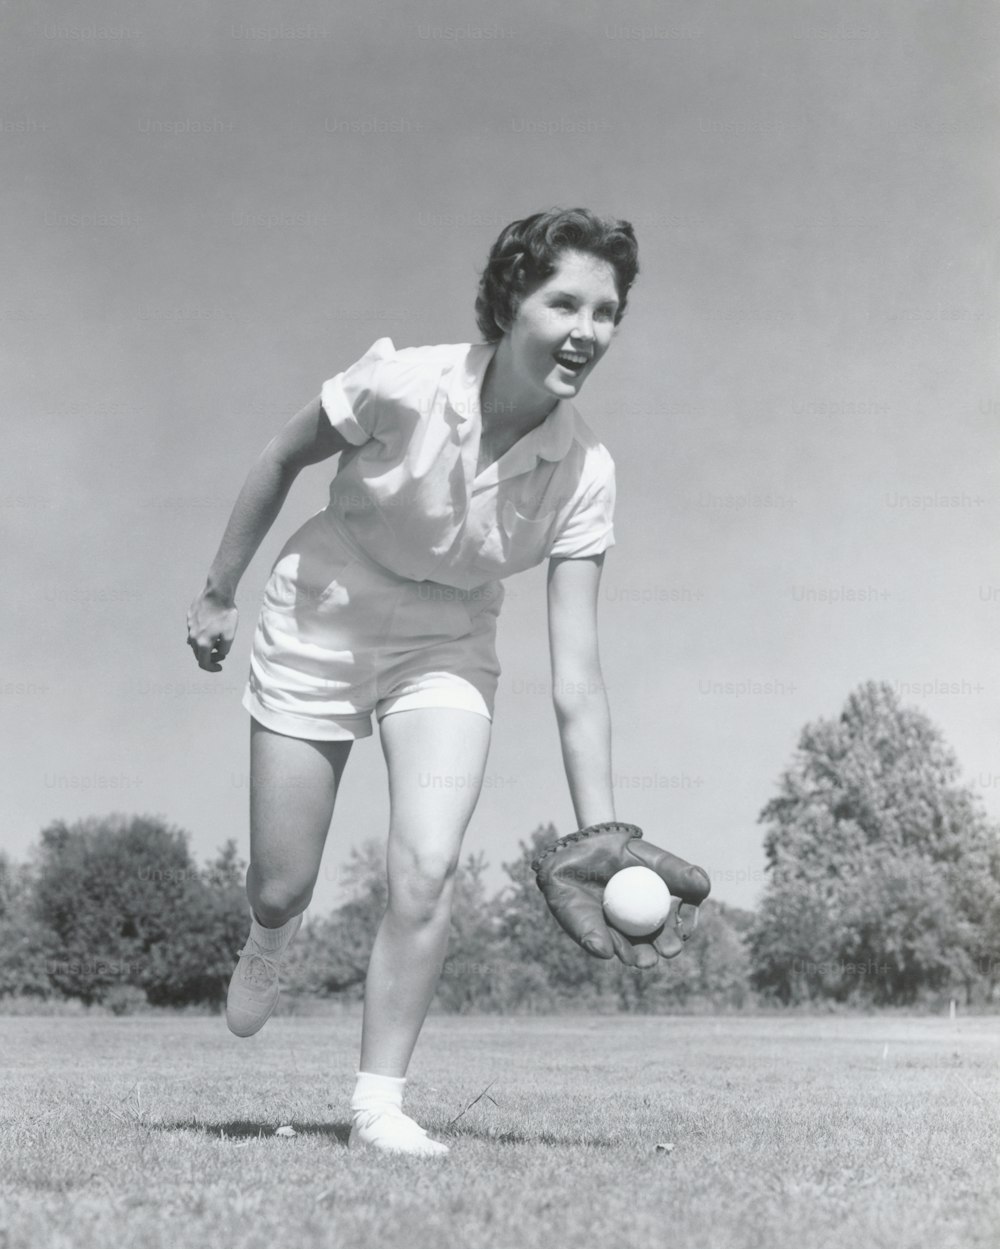 STATI UNITI - CIRCA 1950: Giovane donna che prende il baseball con il guanto.